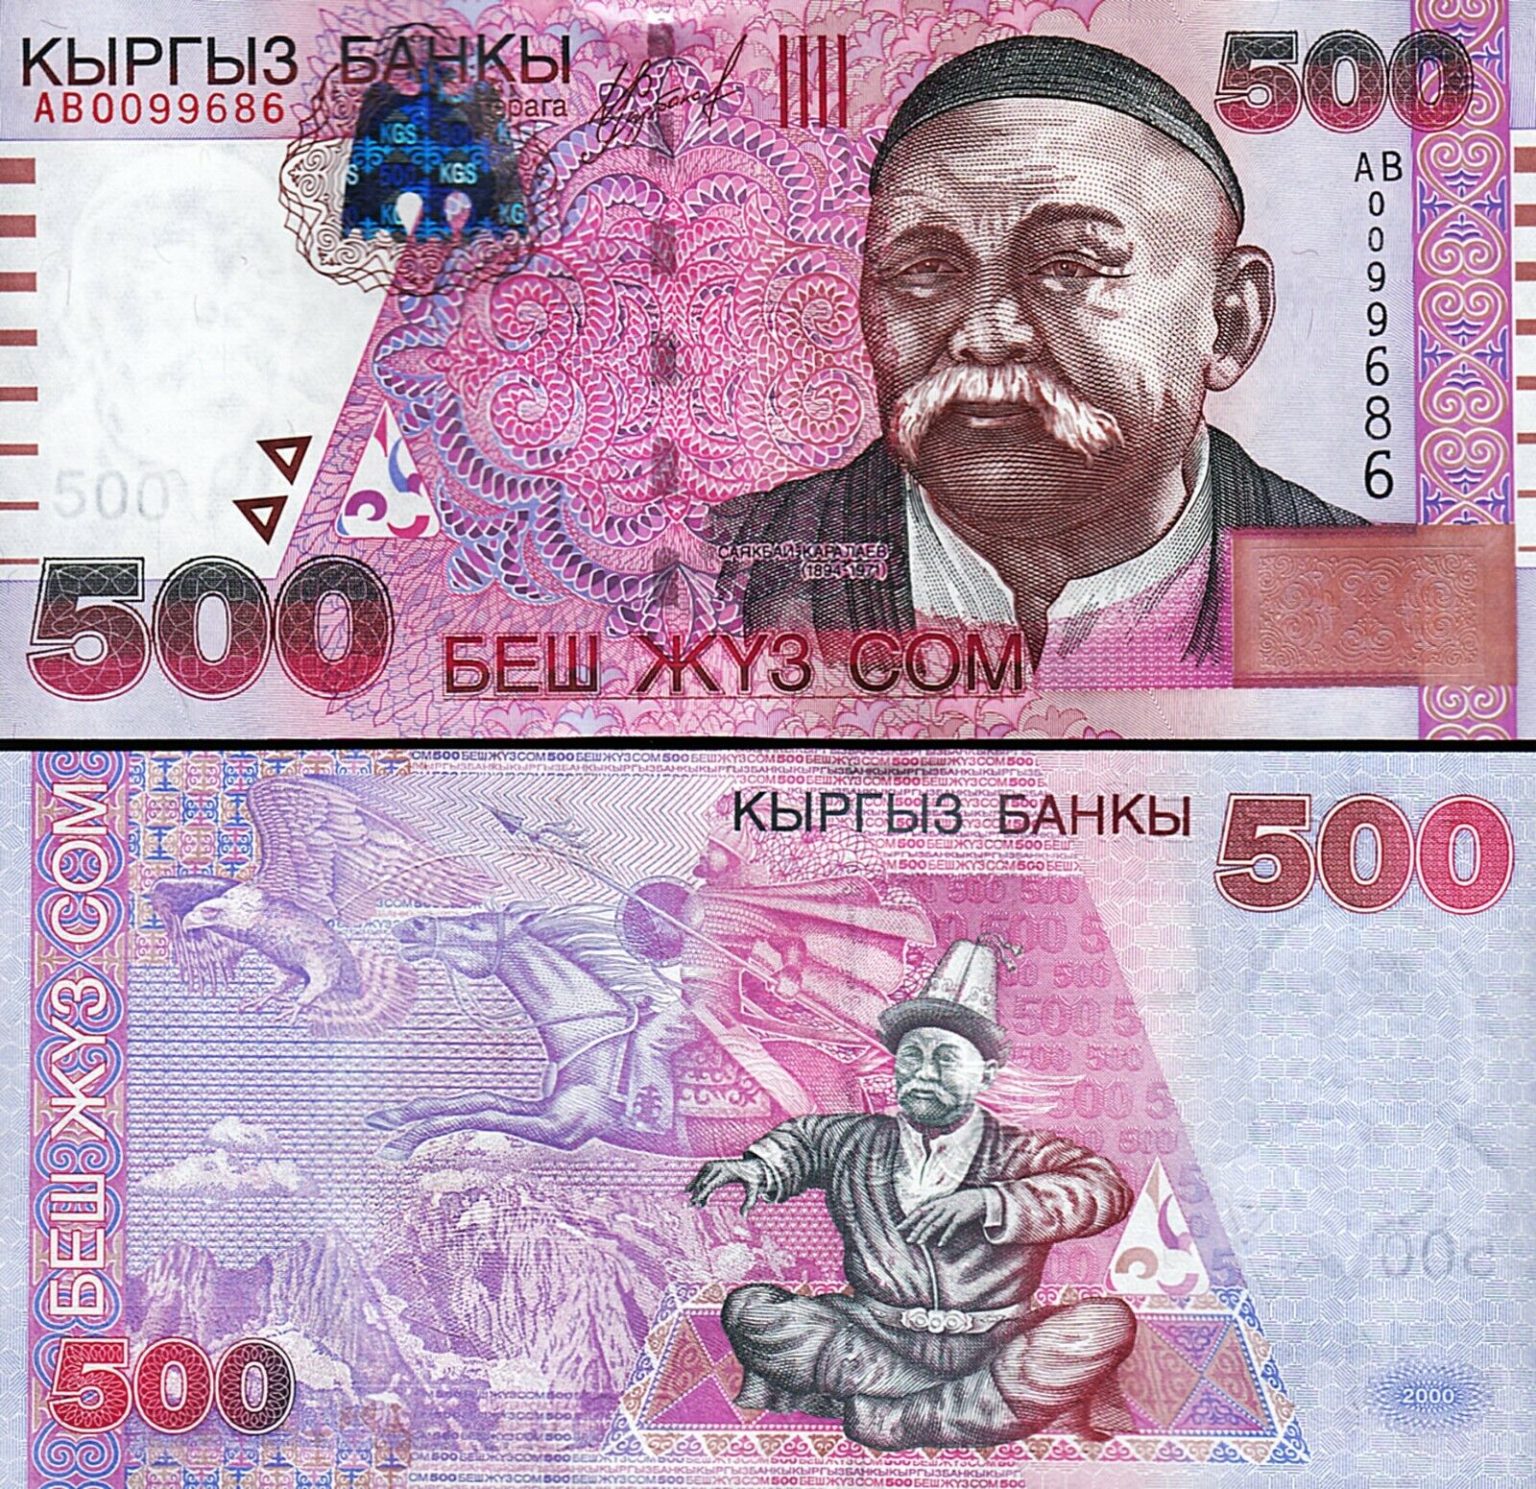 Купюры сом. Кыргызские банкноты 500 сом. Купюра 500 сом Кыргызстан. 2000 Сом купюра Кыргызстана. 500 Сомов.